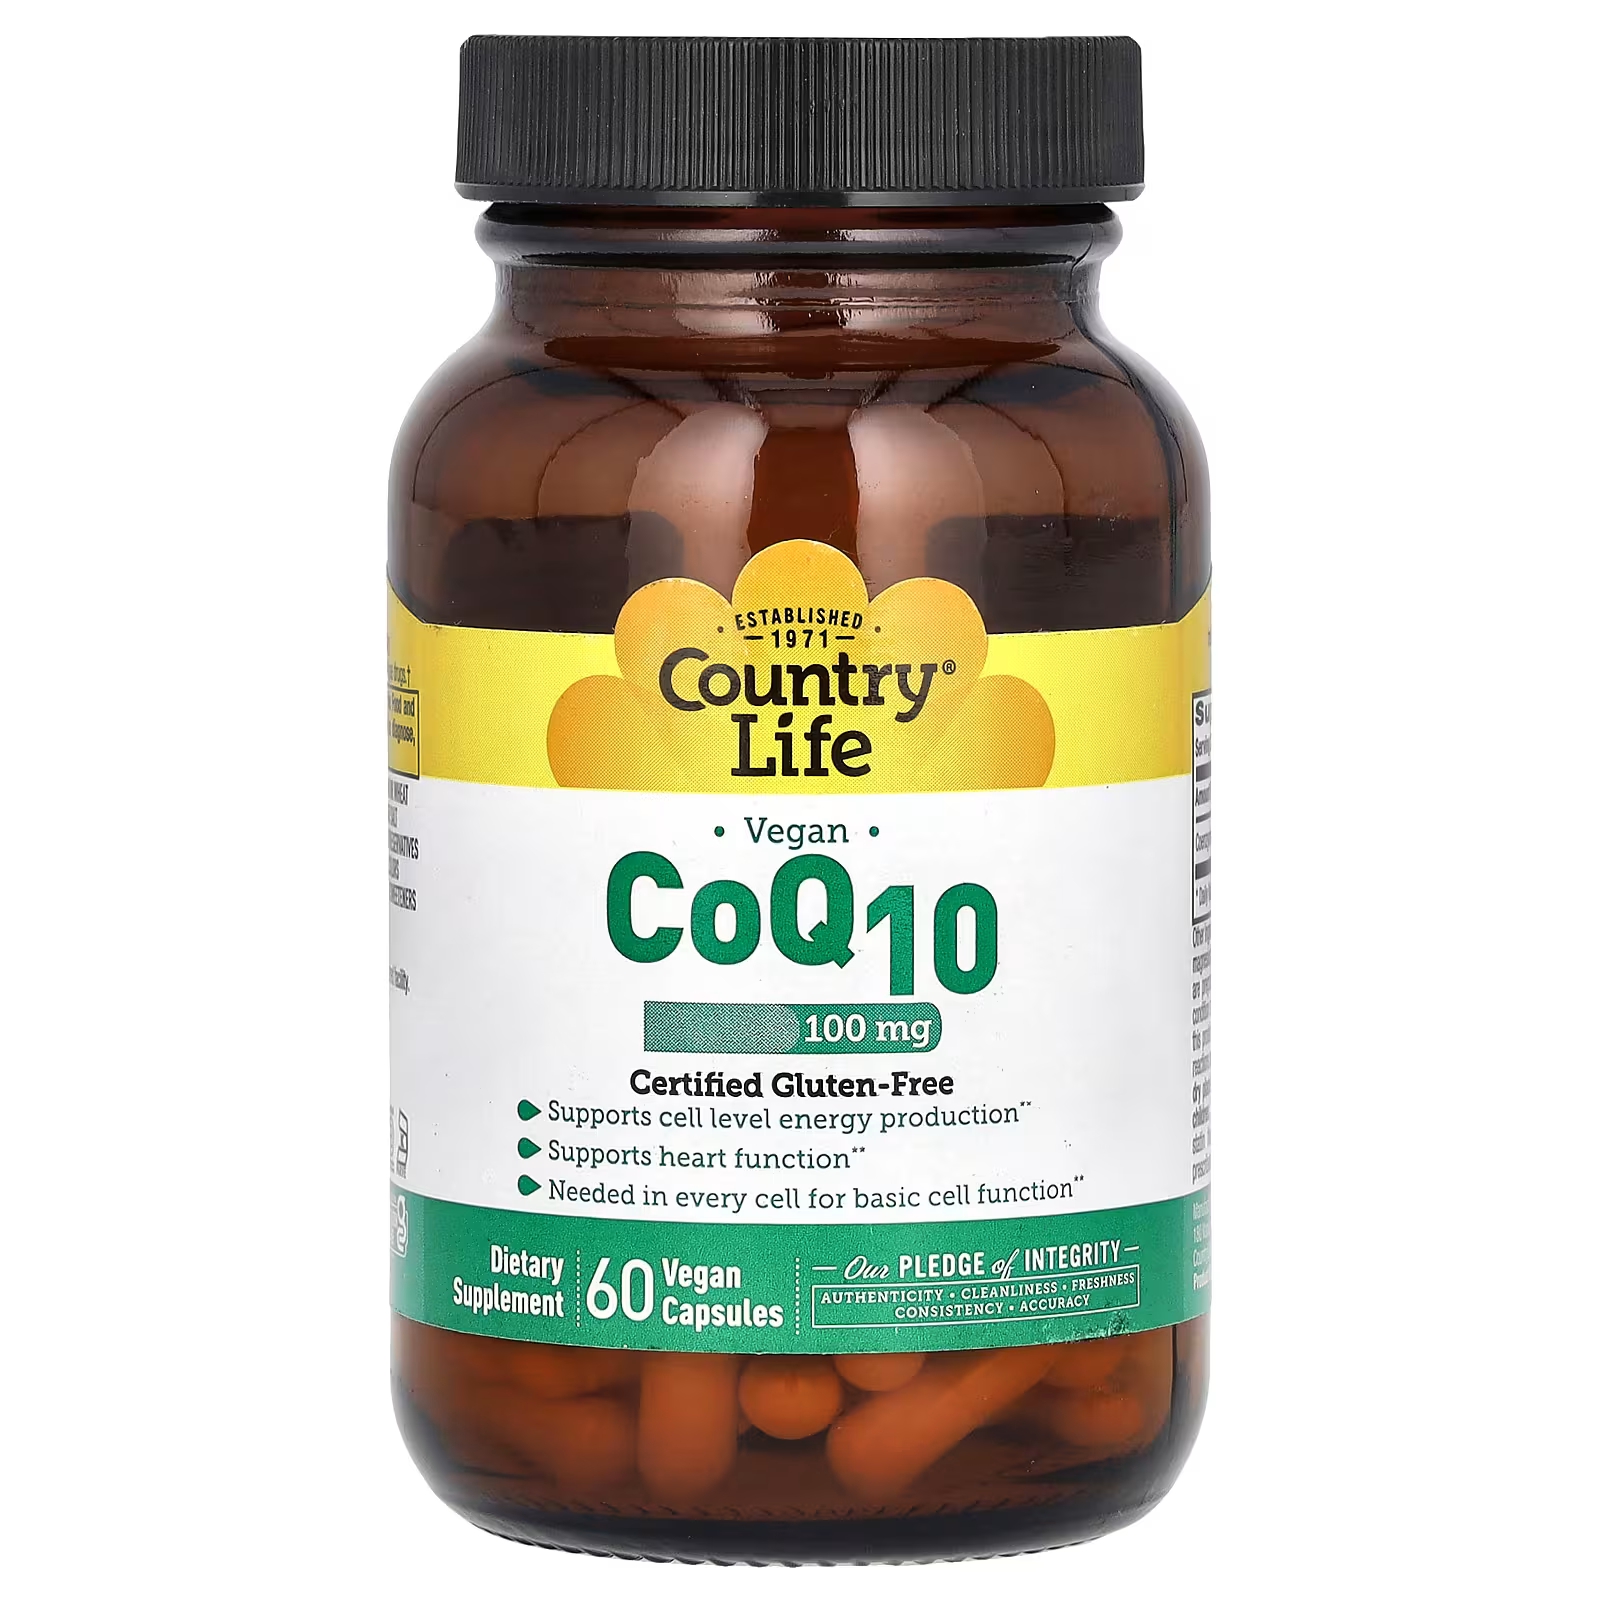 Пищевая добавка Country Life Vegan CoQ10 100 мг, 60 веганских капсул коэнизм coq10 country life 100 мг 60 капсул